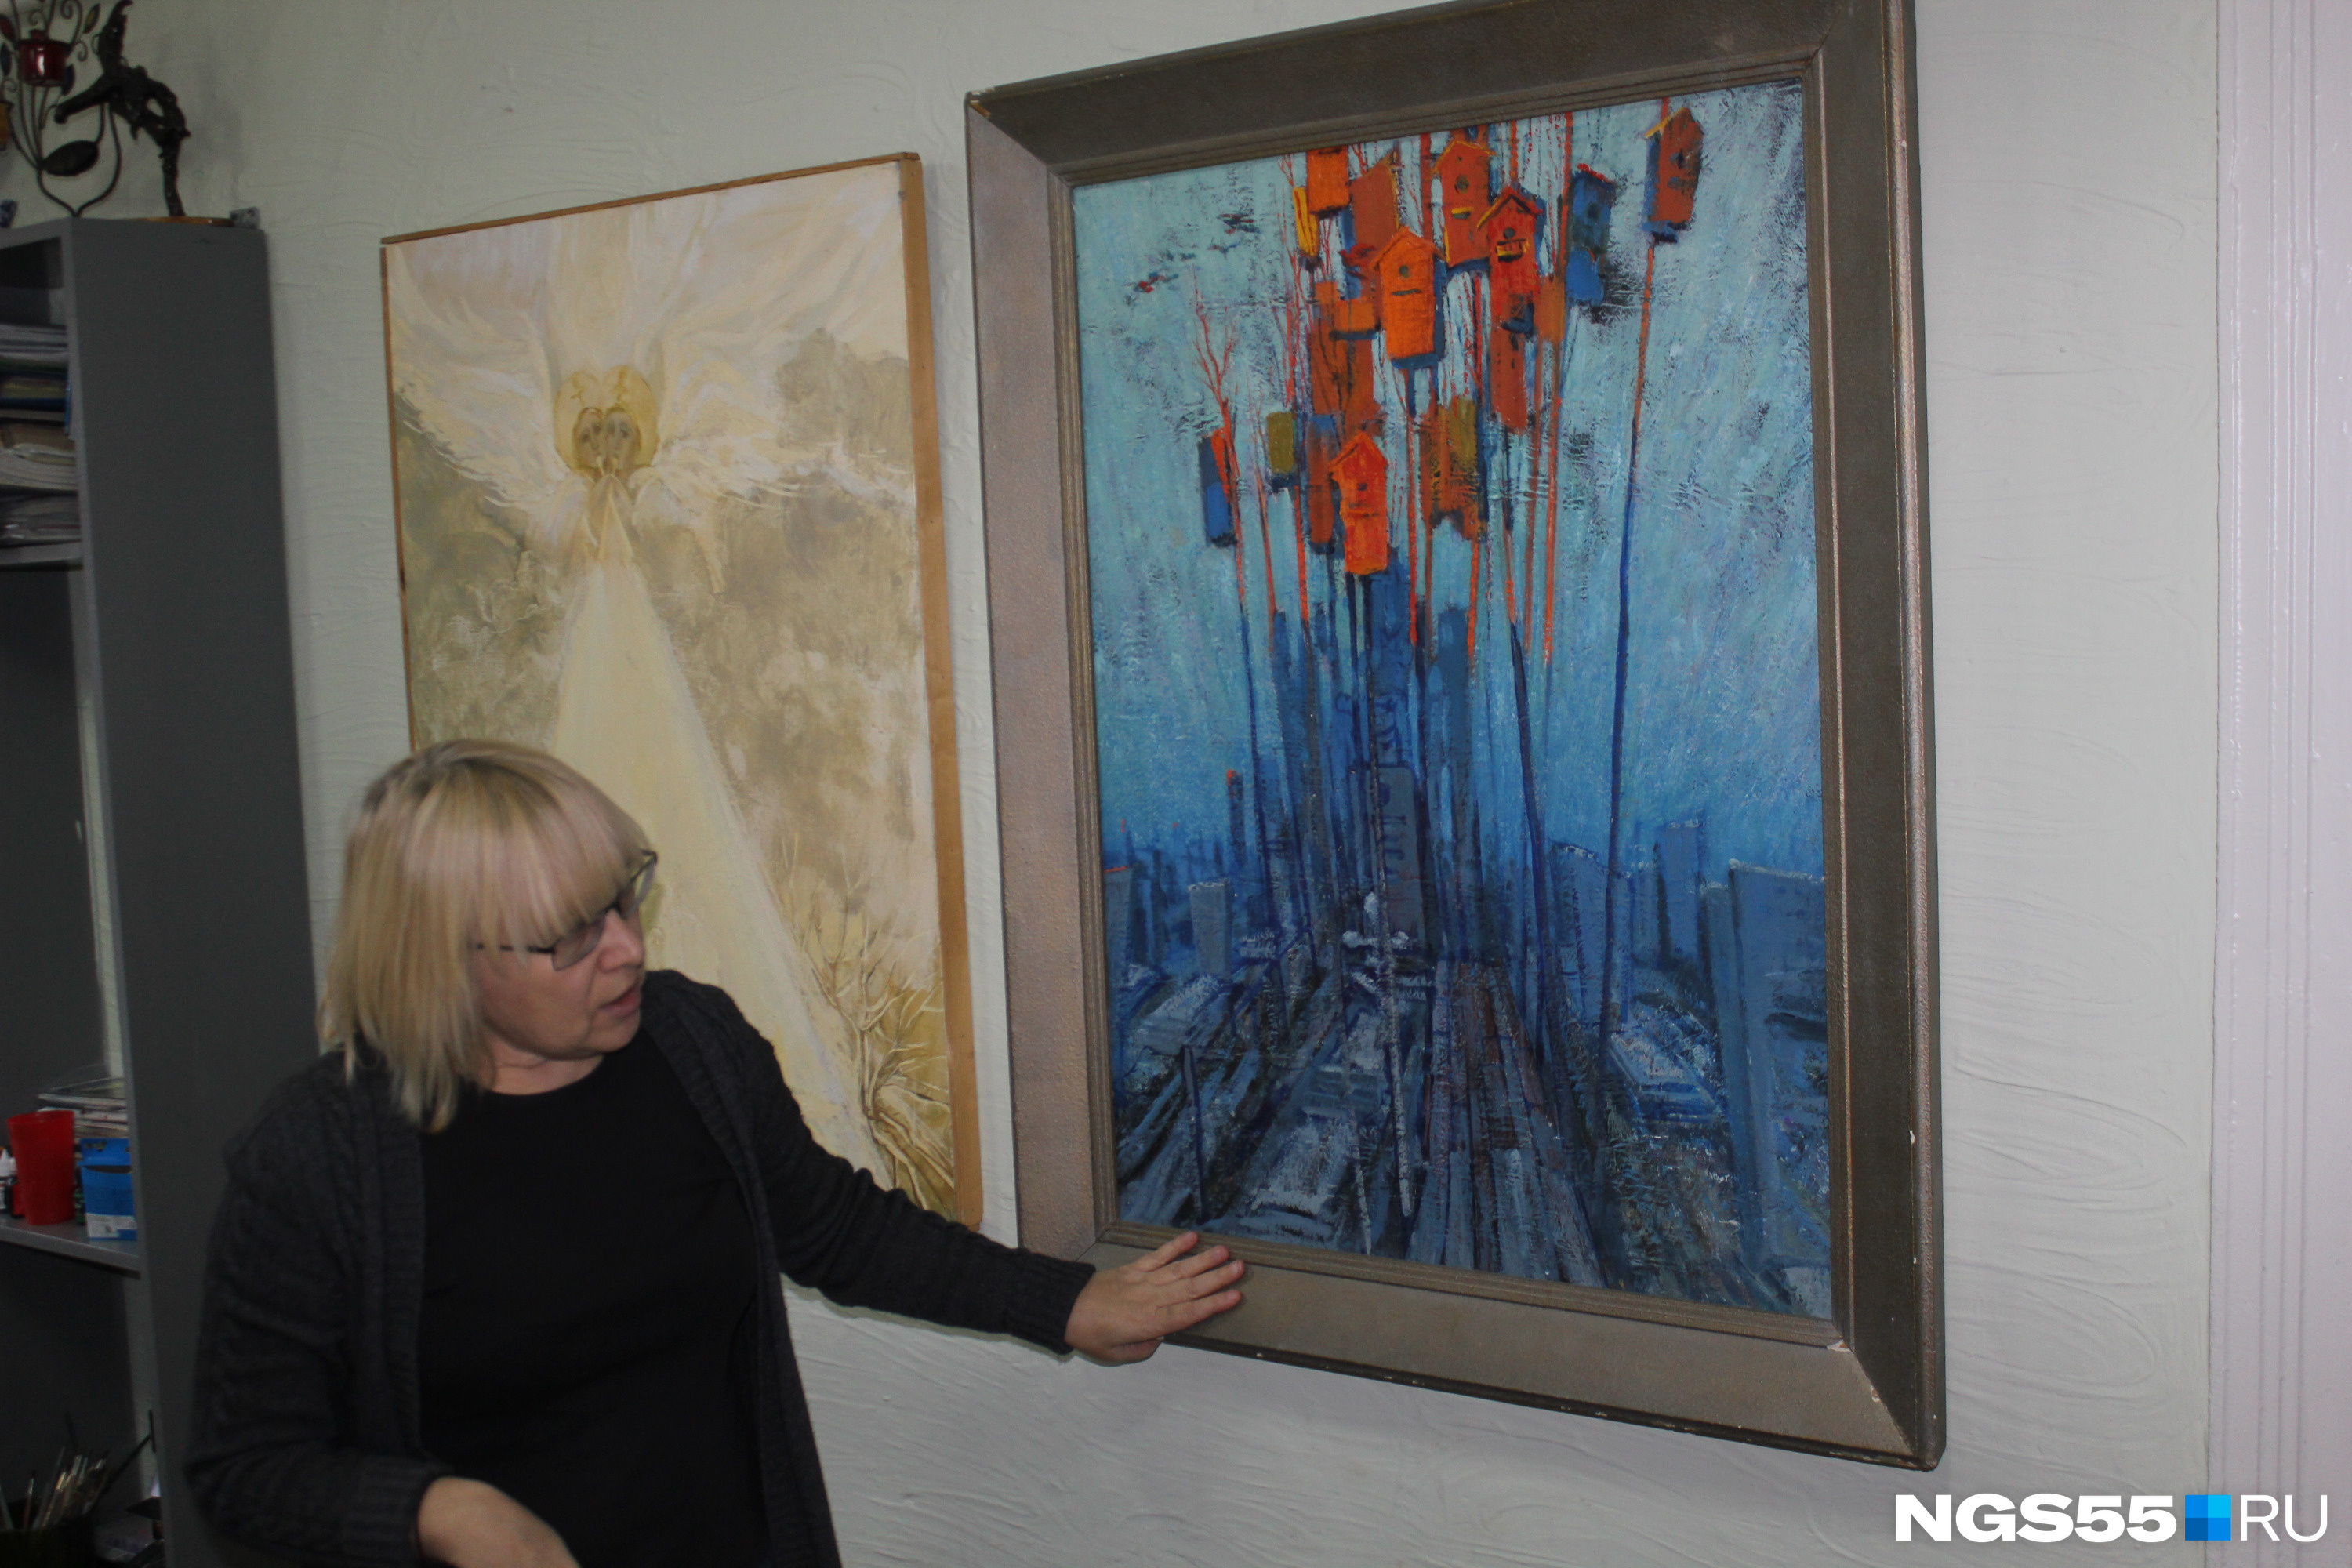 Ирина показывает картину Геннадия Штабнова с изображением скворечников